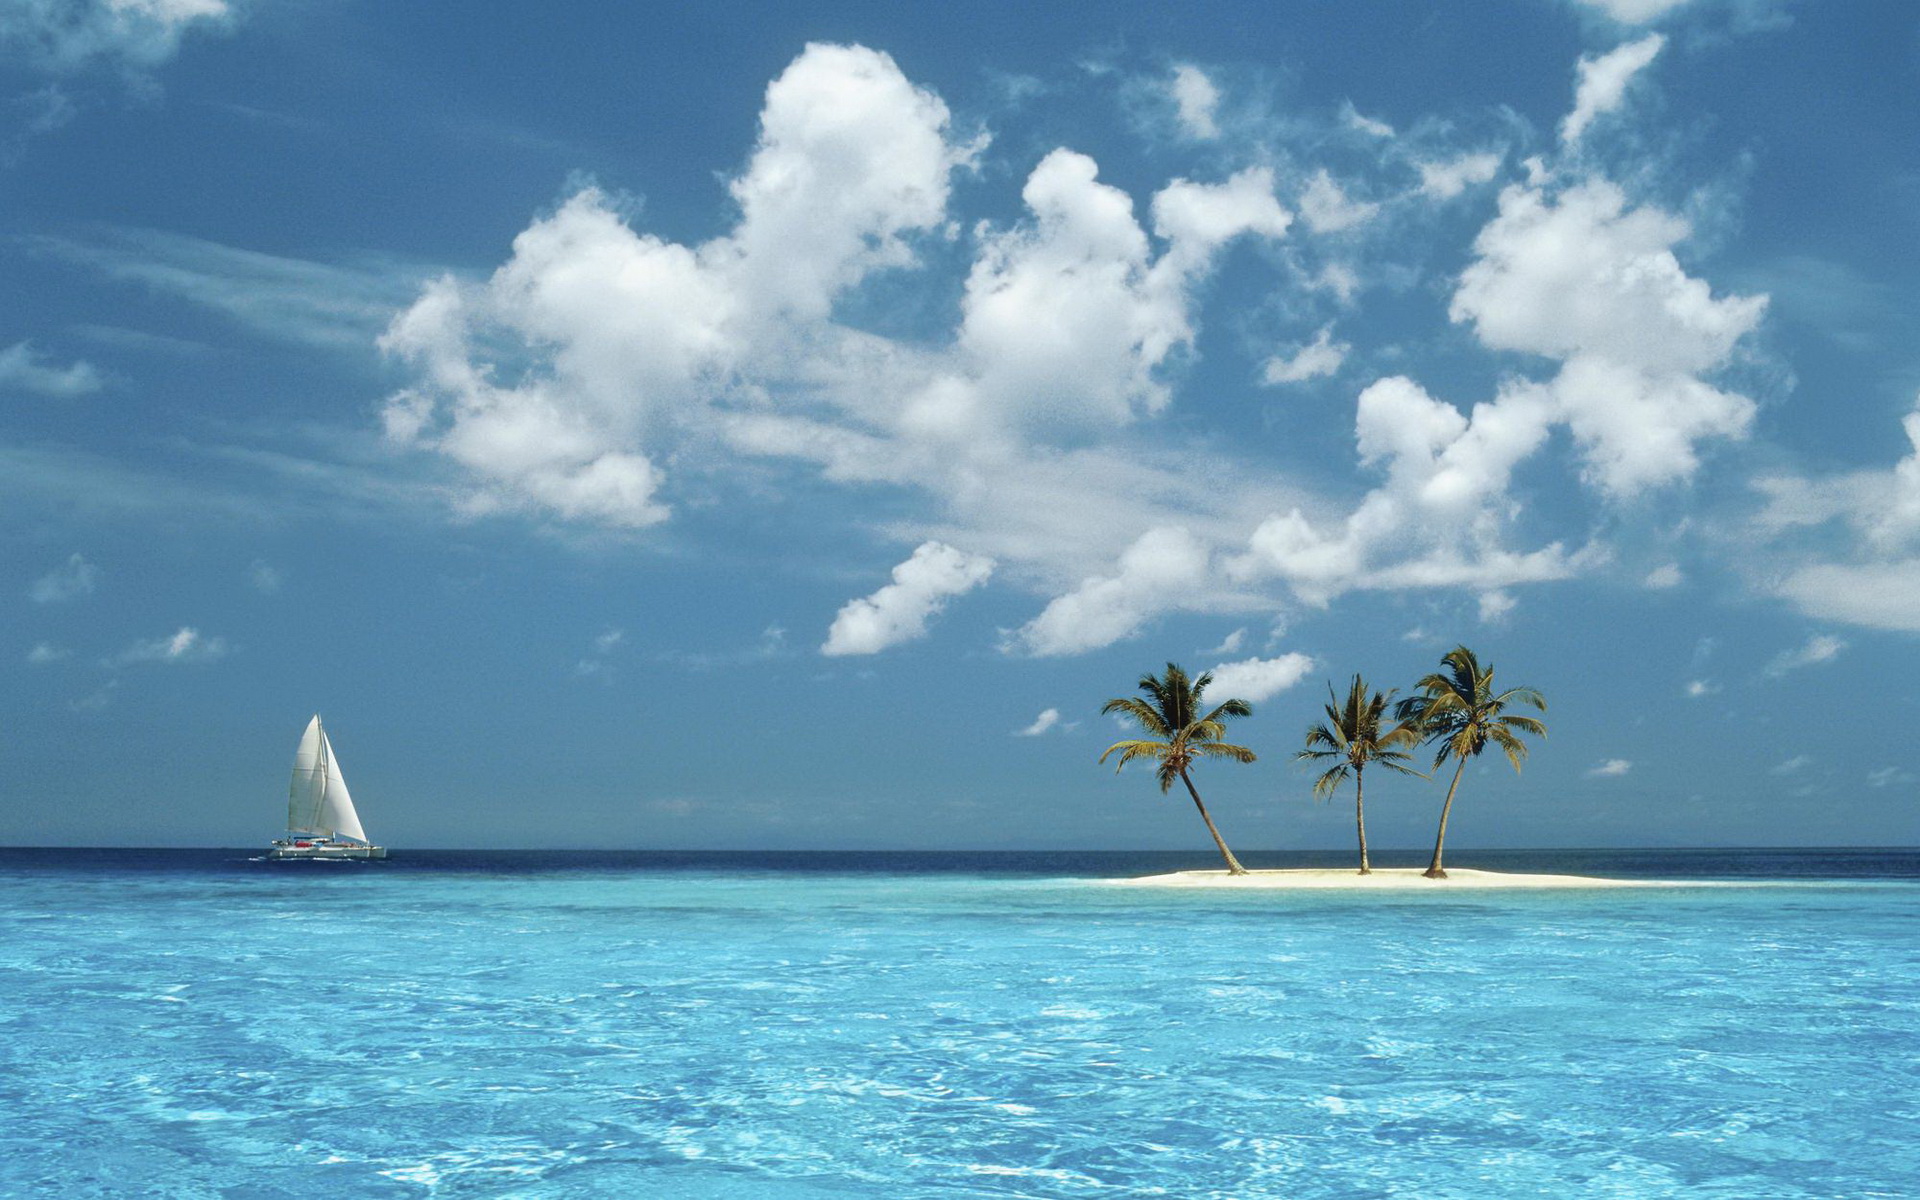 Скачать обои бесплатно Океан, Остров, Тропический, Парусная Лодка, Земля/природа картинка на рабочий стол ПК